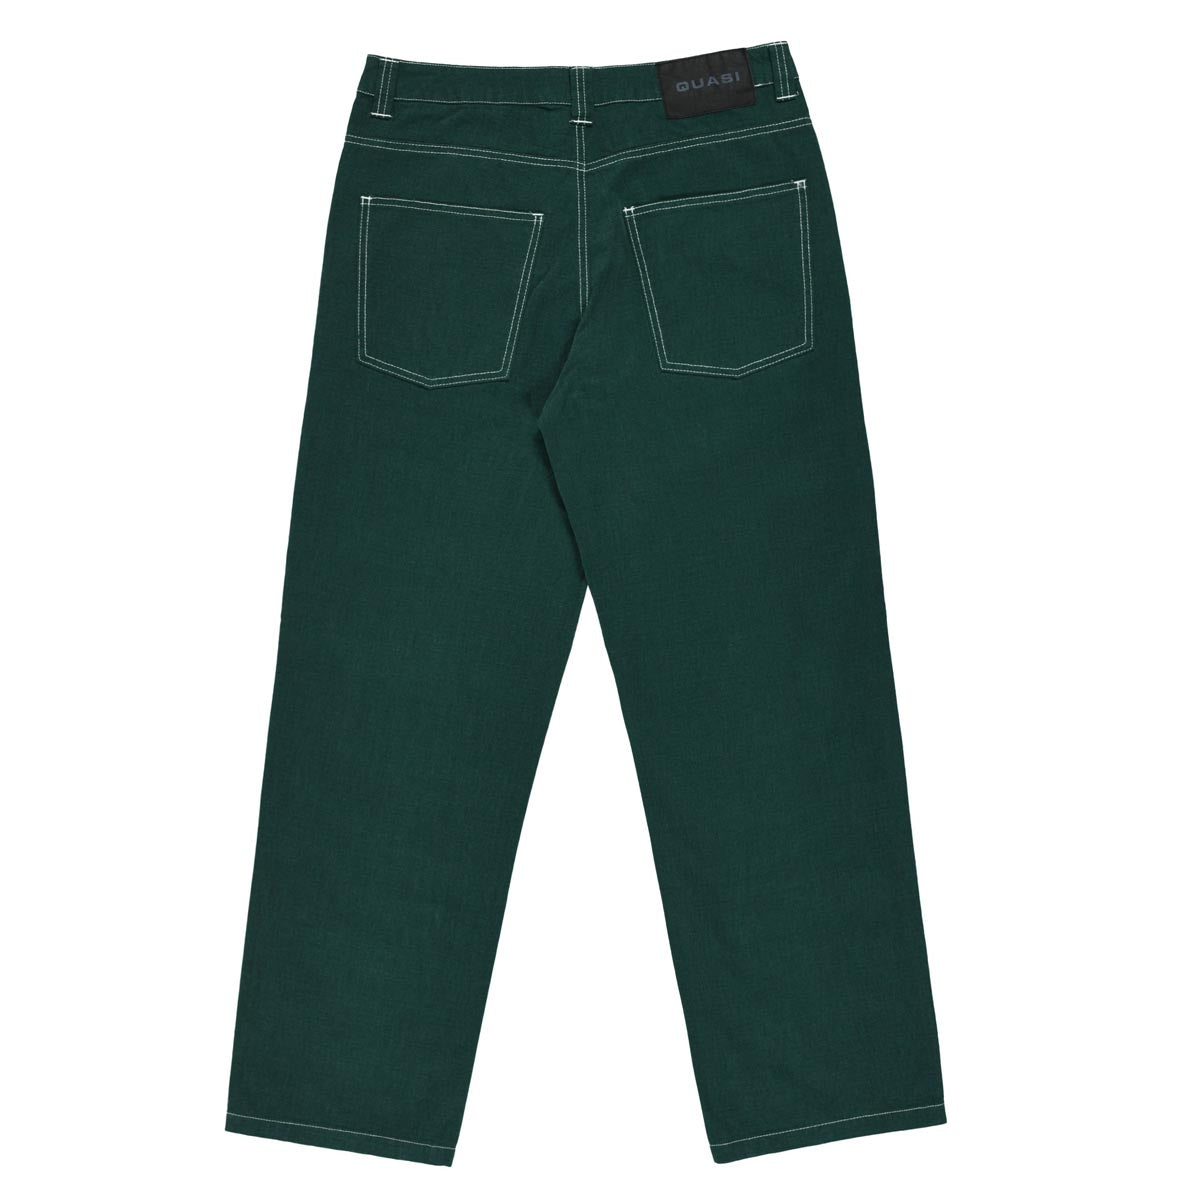 Quasi 102 Jeans - Evergreen image 2